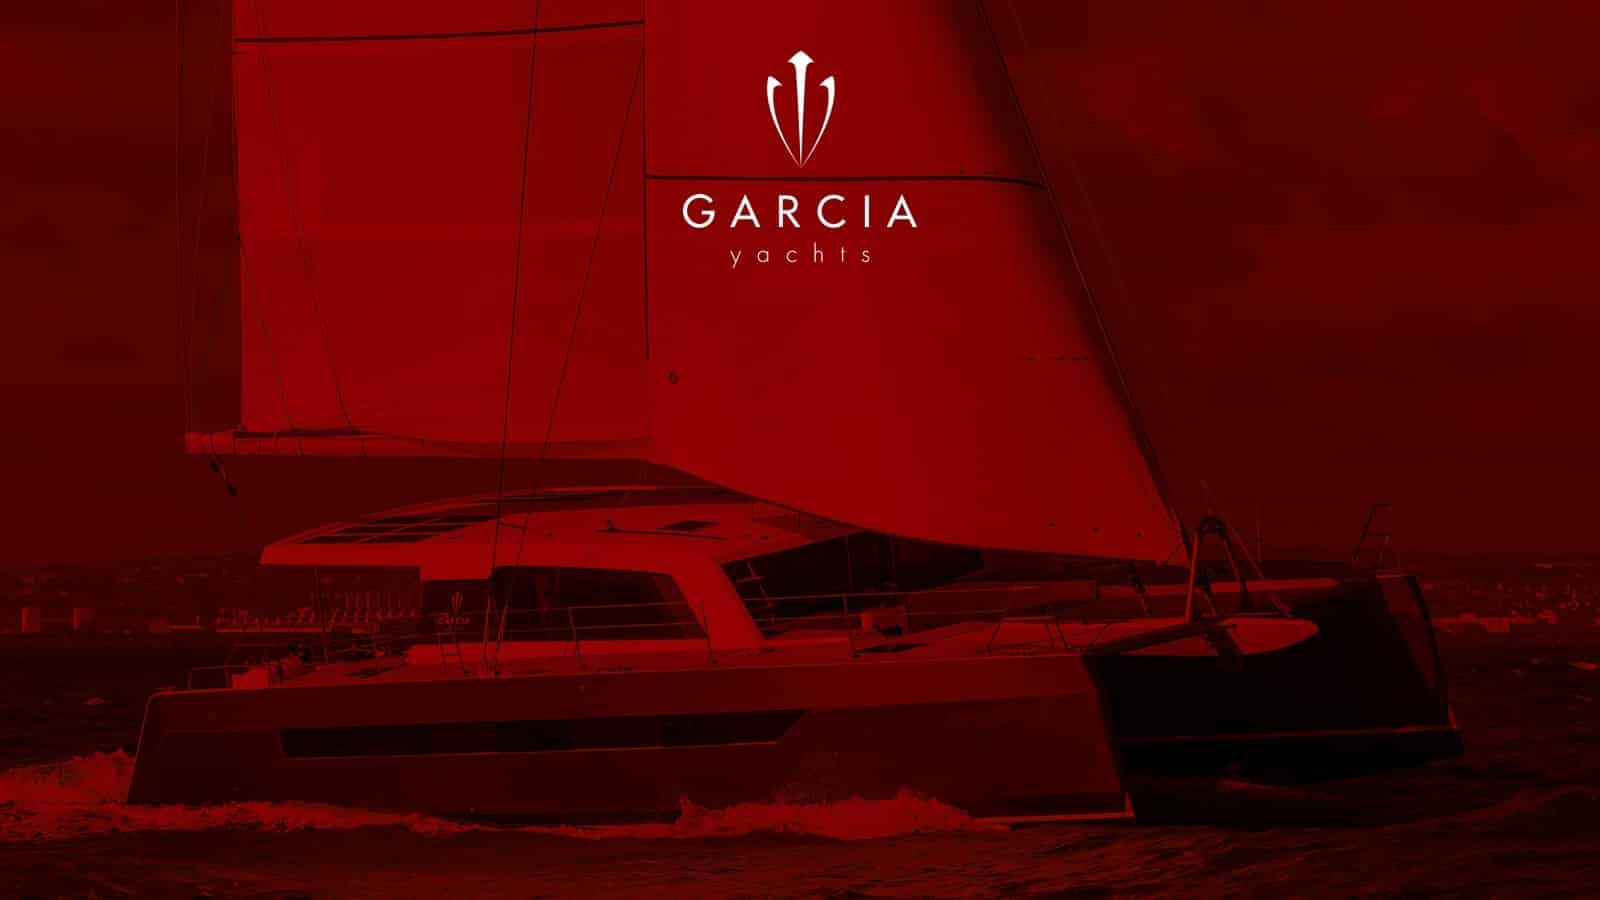 Garcia Yachts